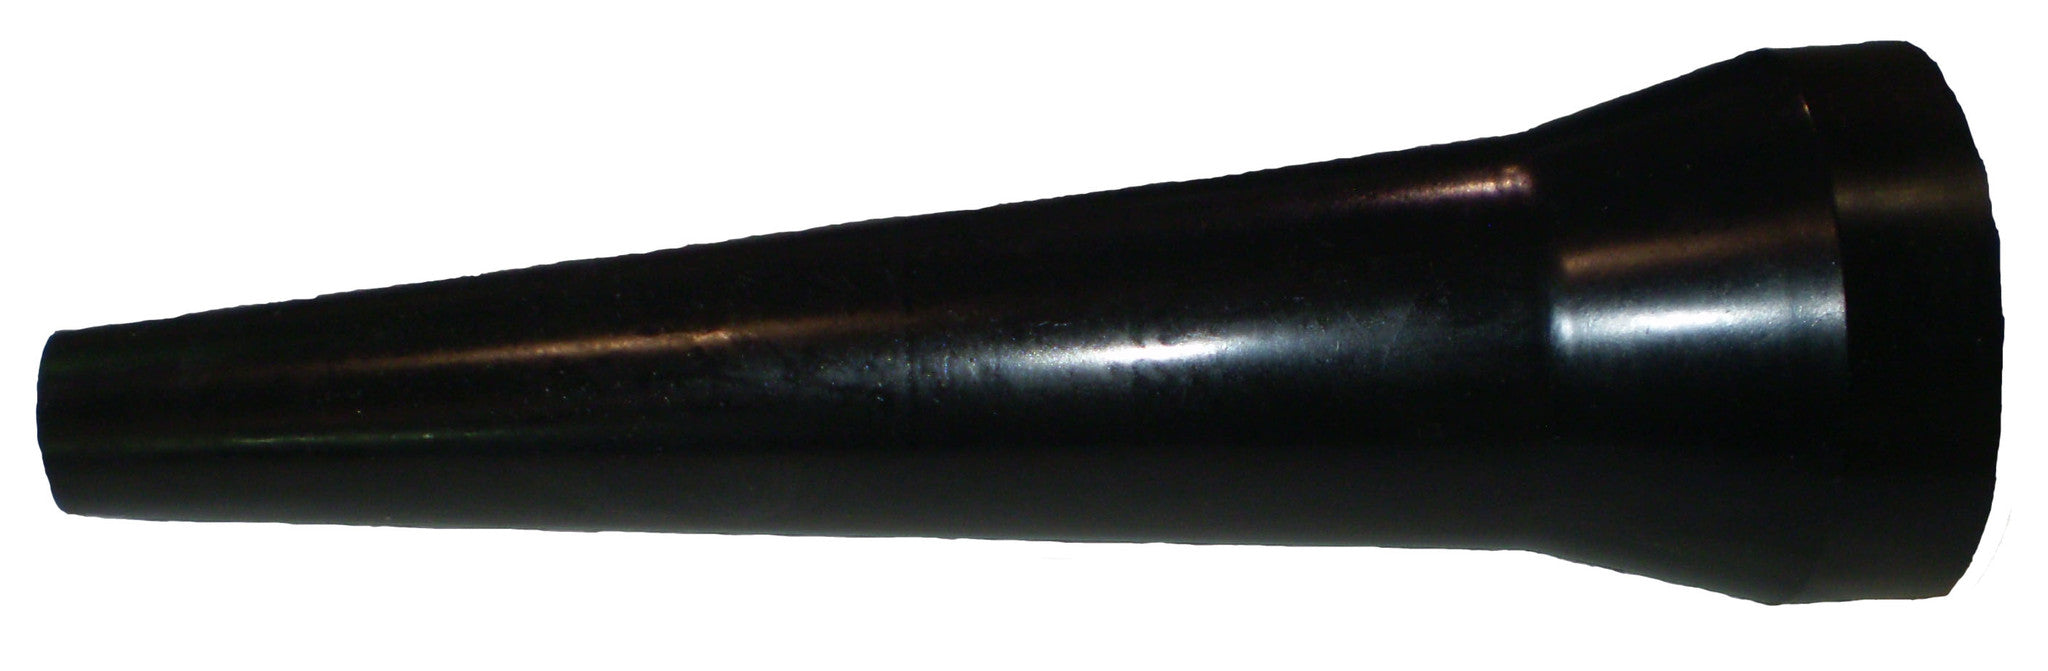 Water Connon Nozzle Model 35057421